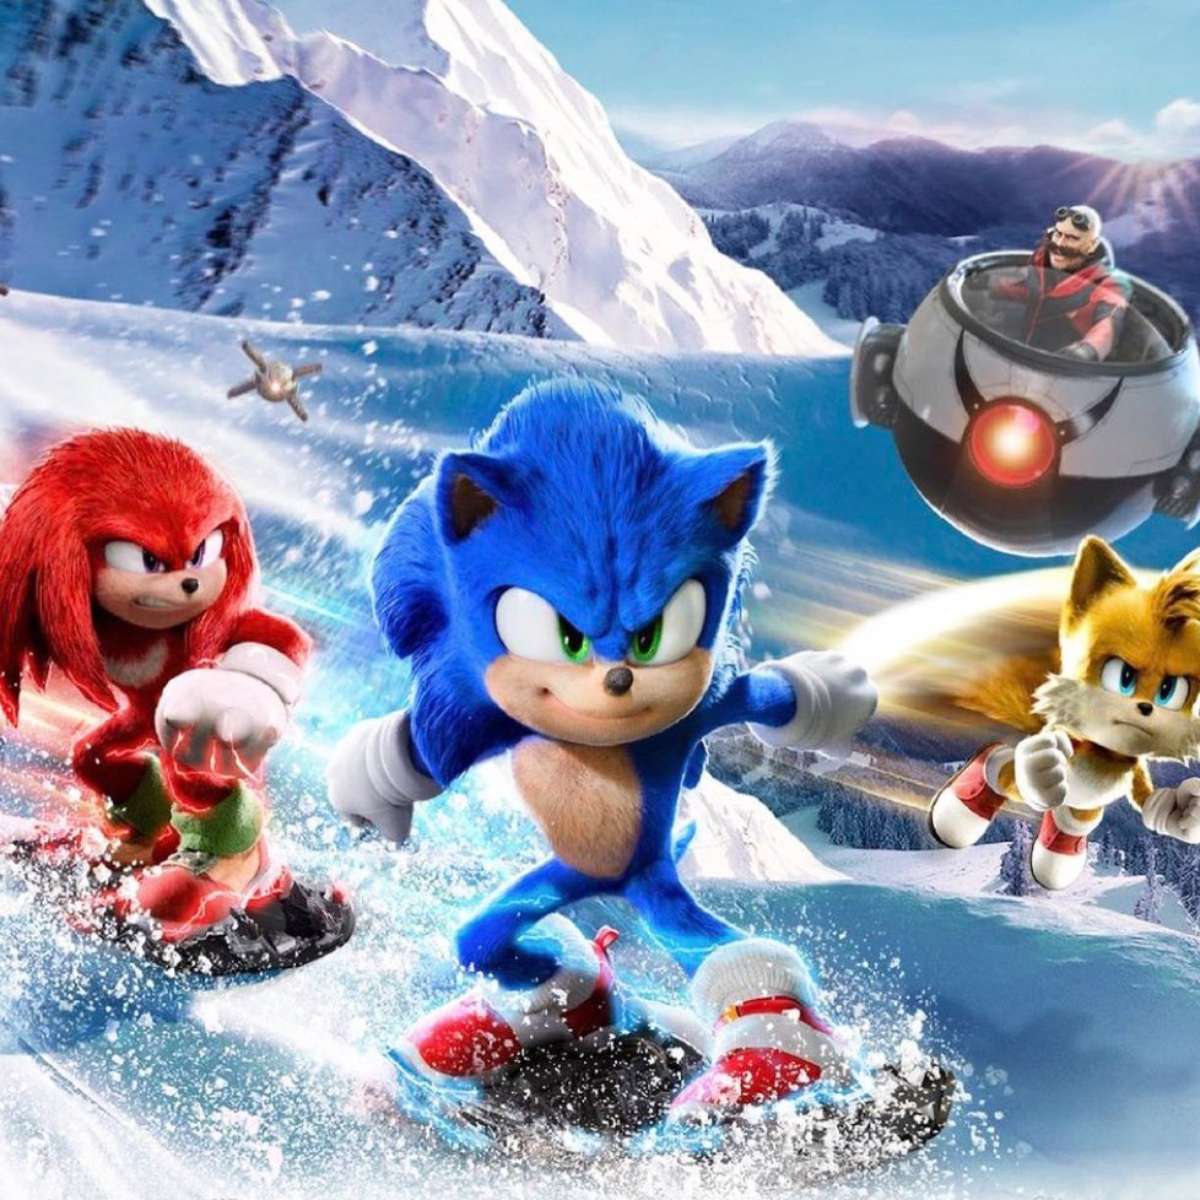 Sonic 2”: filme ganha três pôsteres com personagens principais; confira -  Olhar Digital